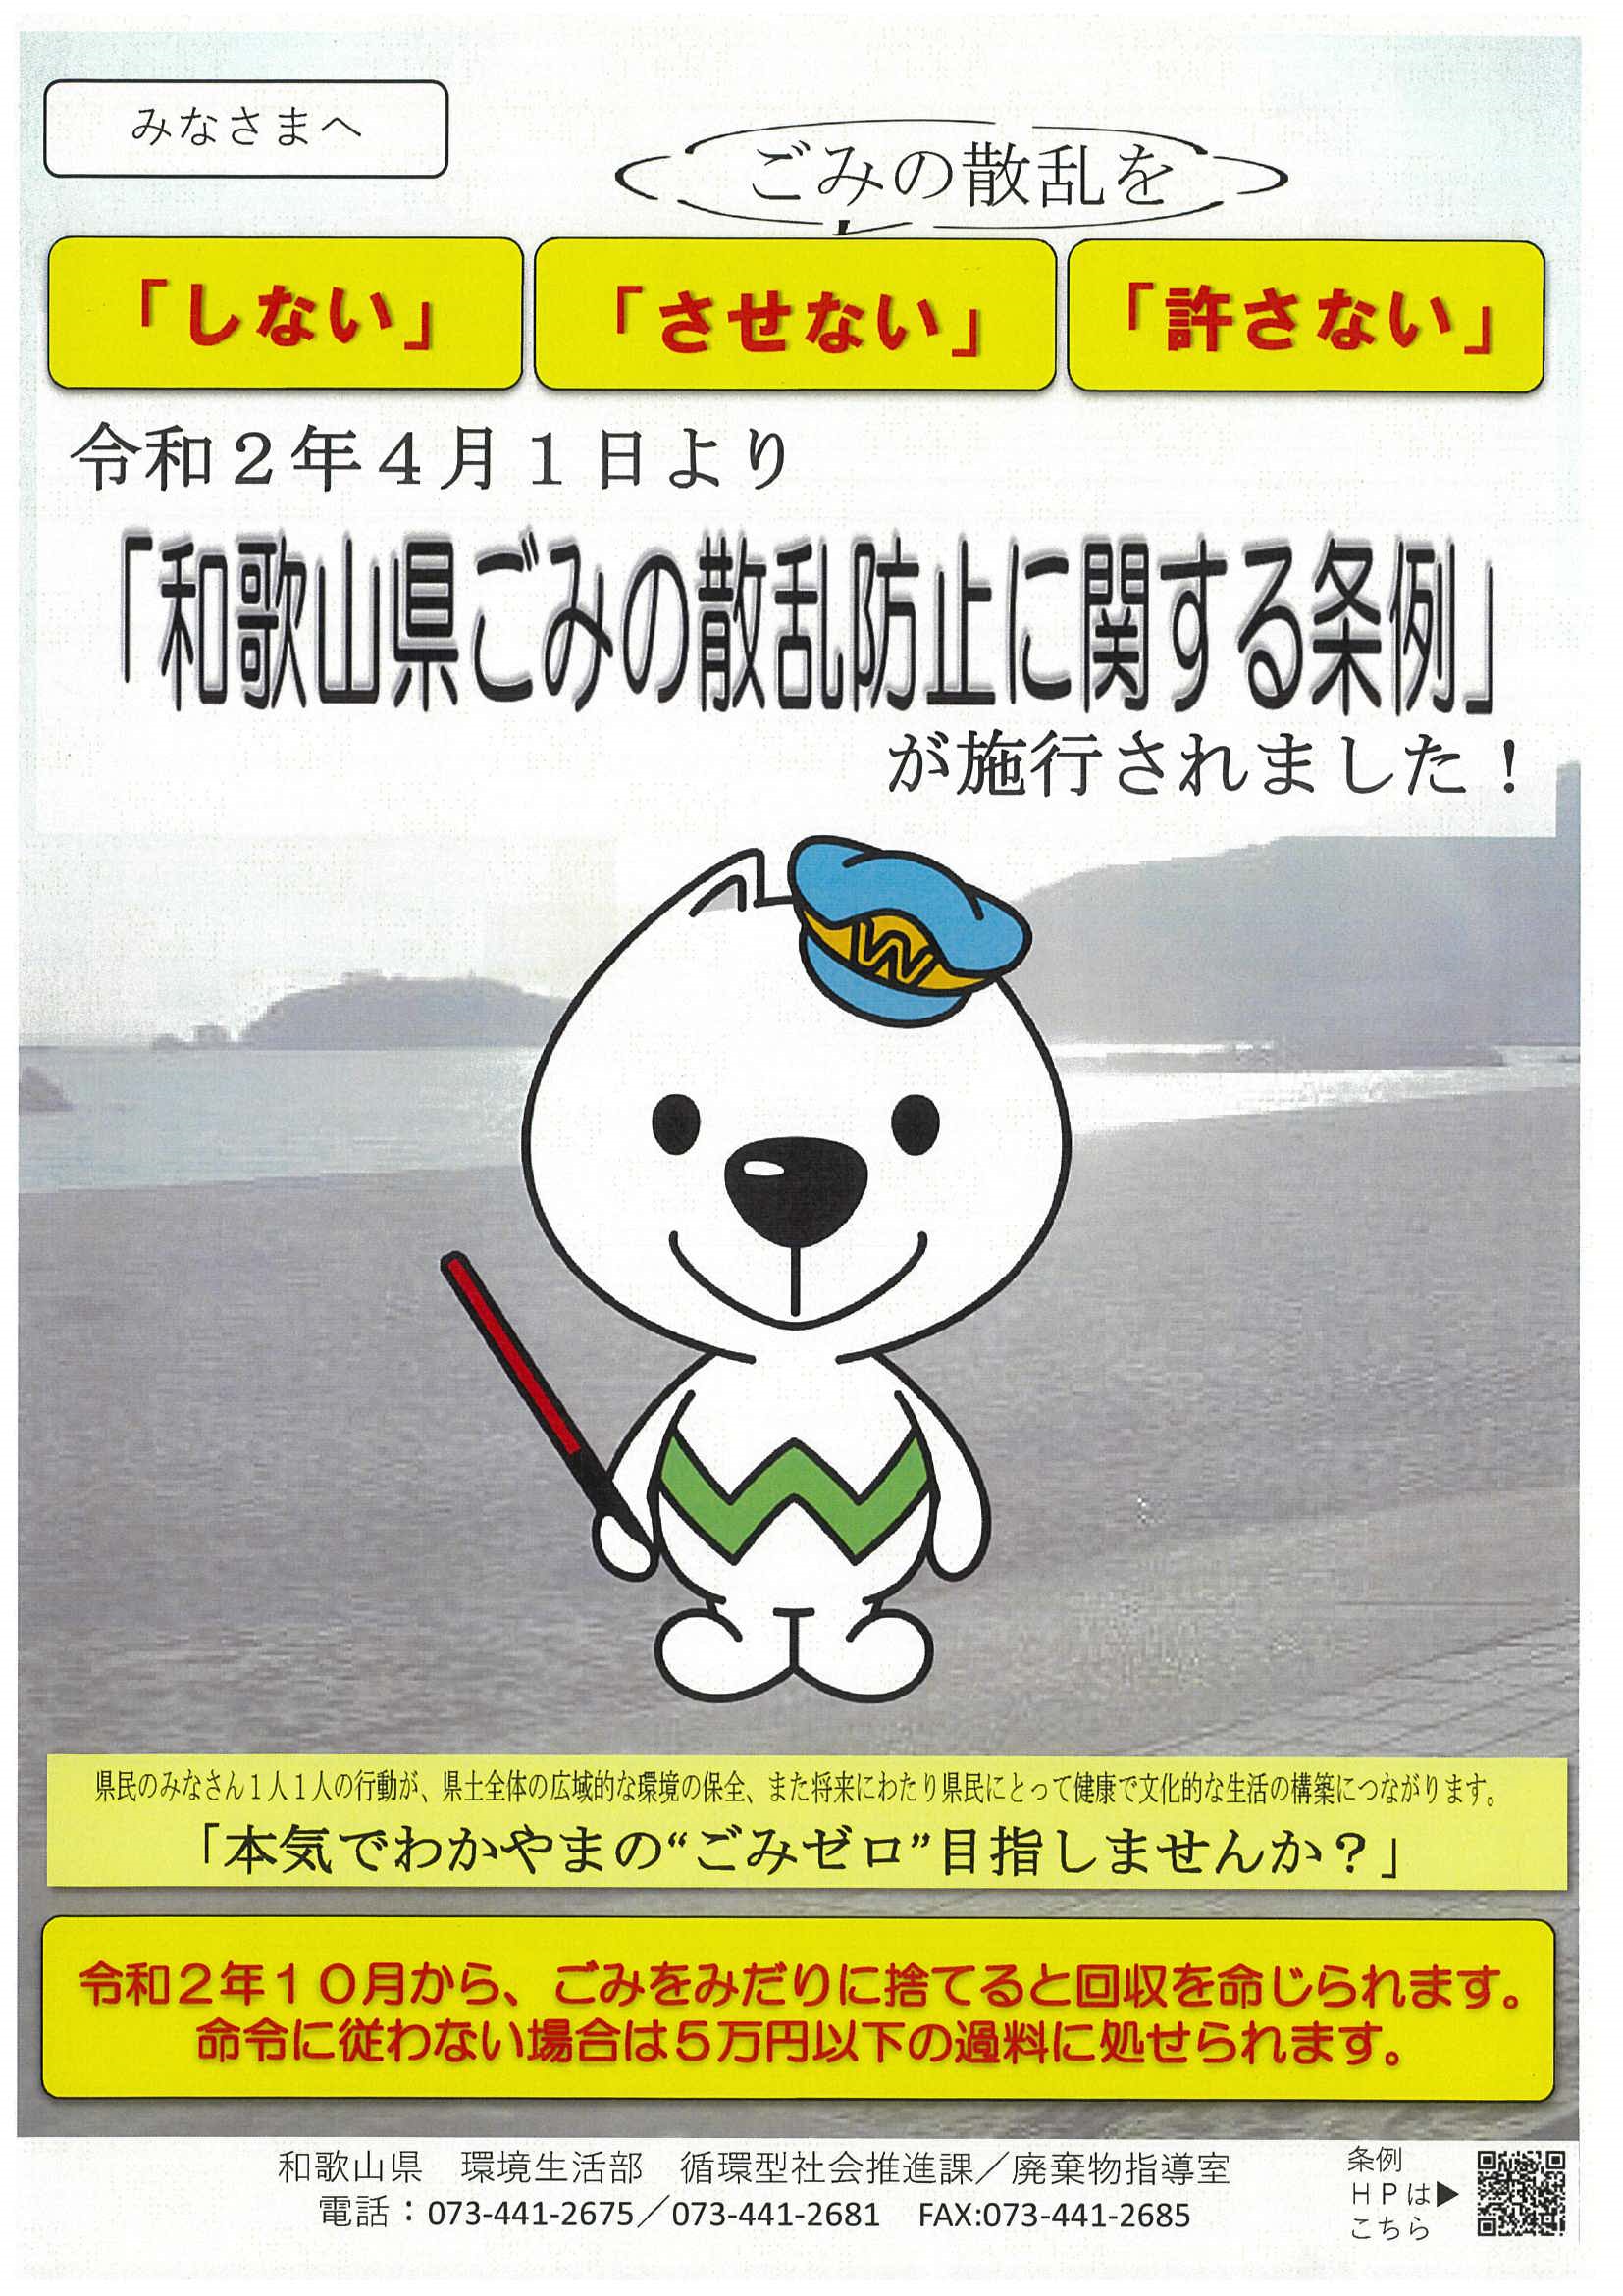 条例案内チラシ「令和2年4月1日より『和歌山県ごみの散乱防止に関する条例』が施行されました」